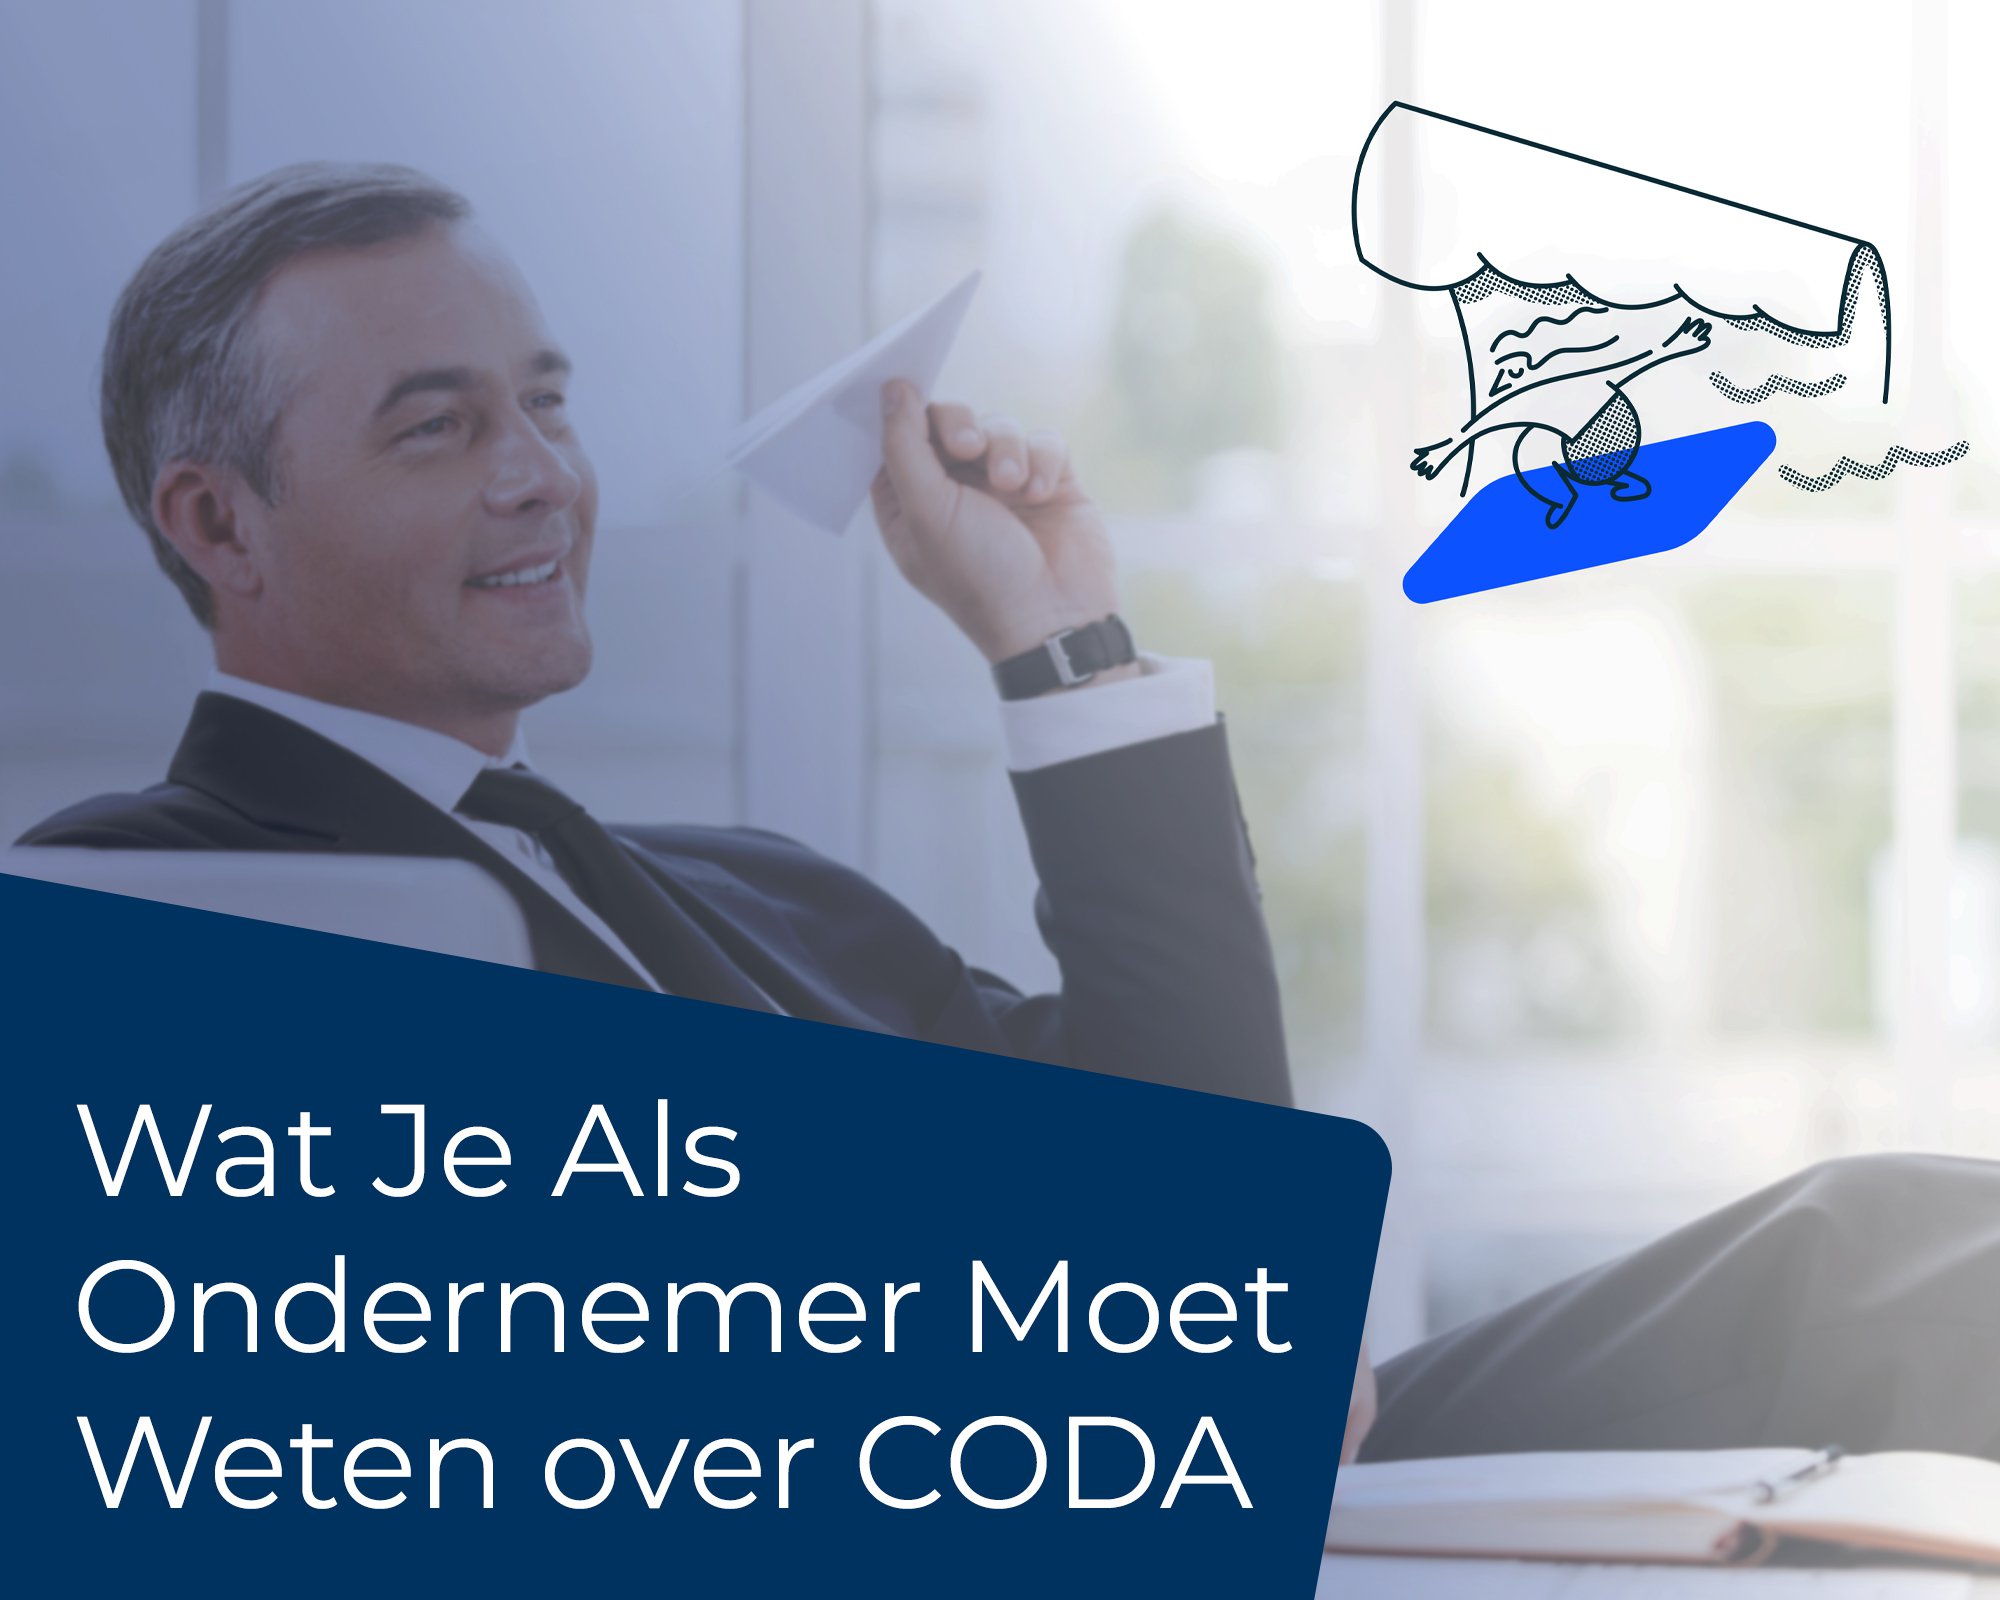 Wat je als ondernemer over CODA moet weten cover